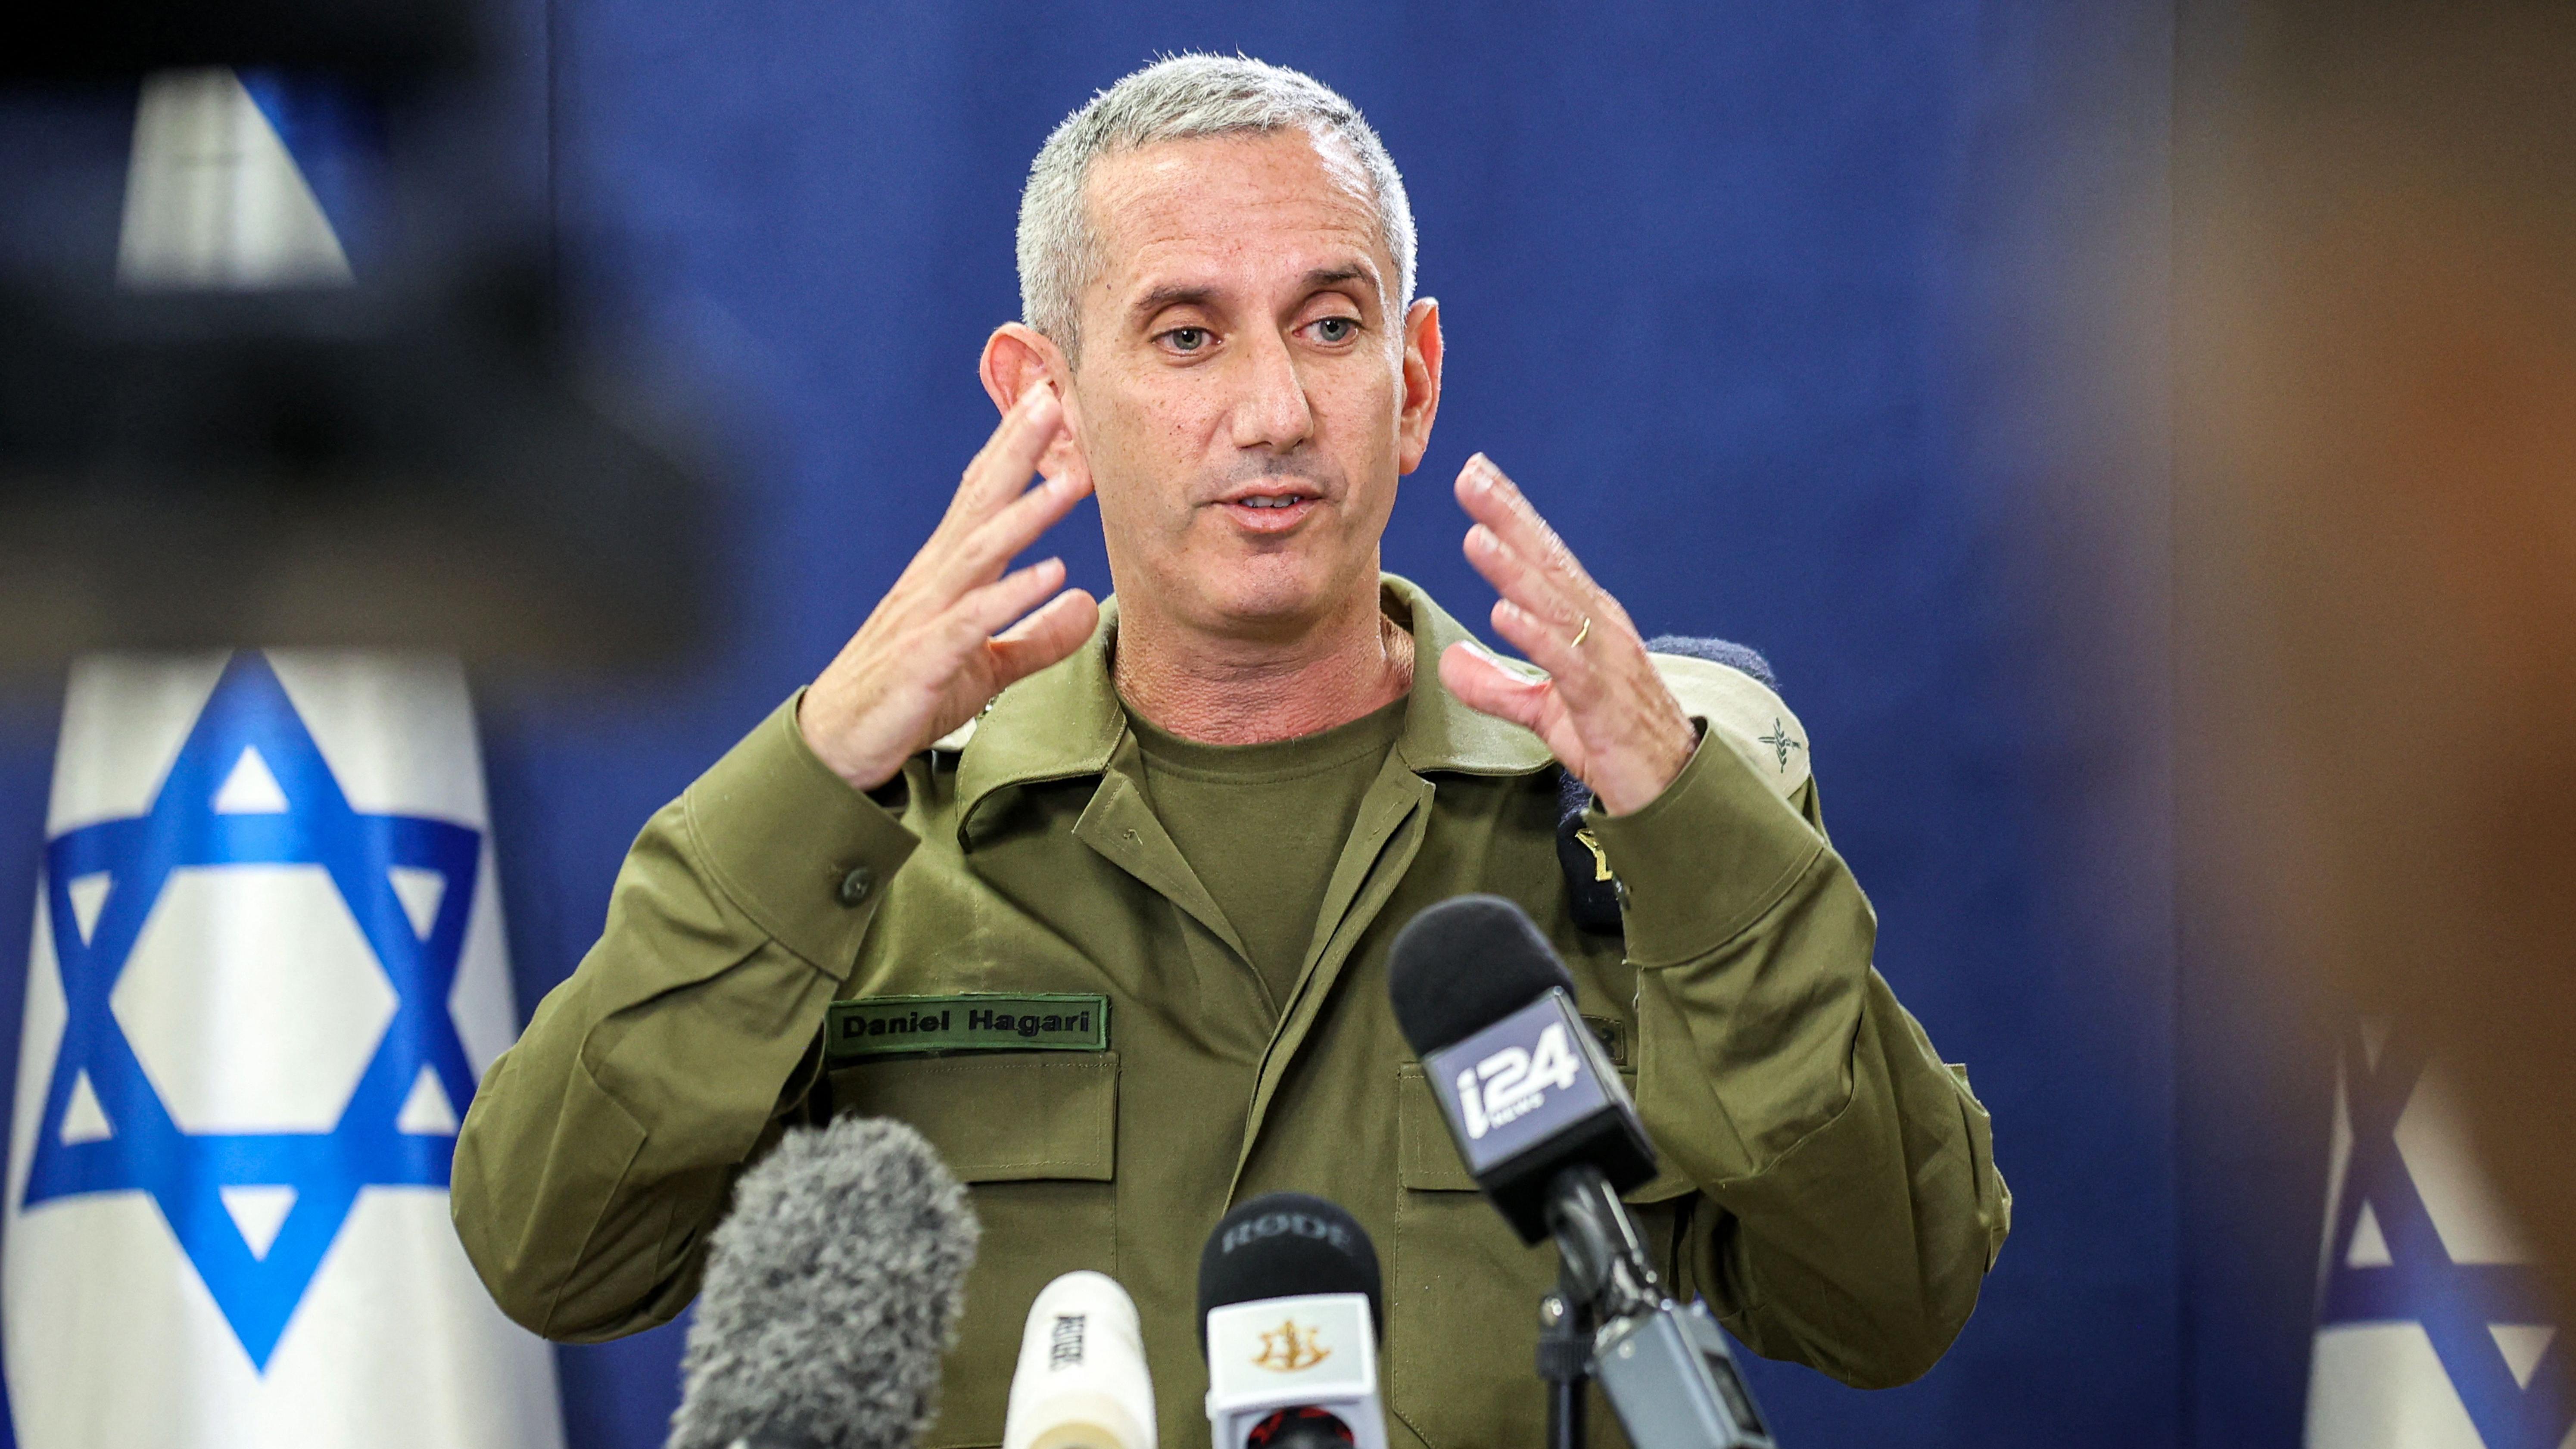 Israil ordusu sözcüsü Daniel Hagari